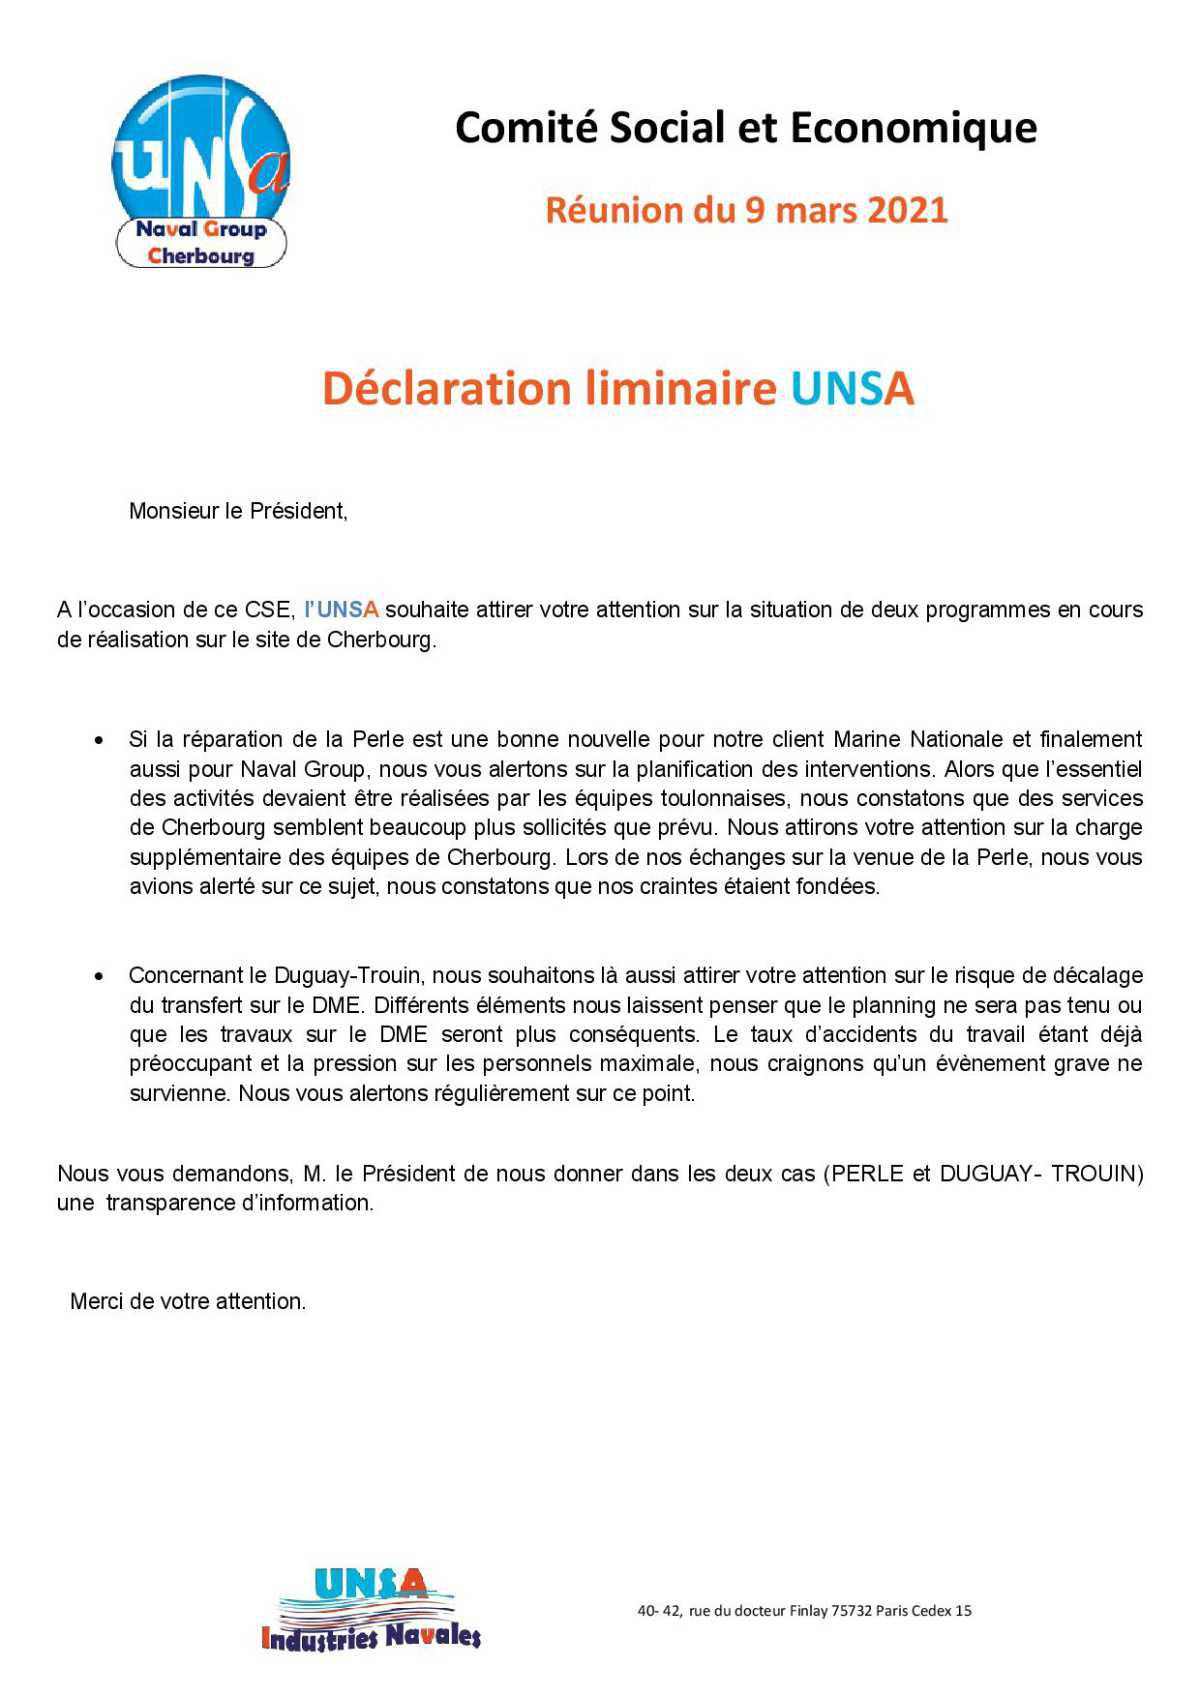 CSE de Cherbourg - Réunion du 9 mars 2021 - Déclaration liminaire